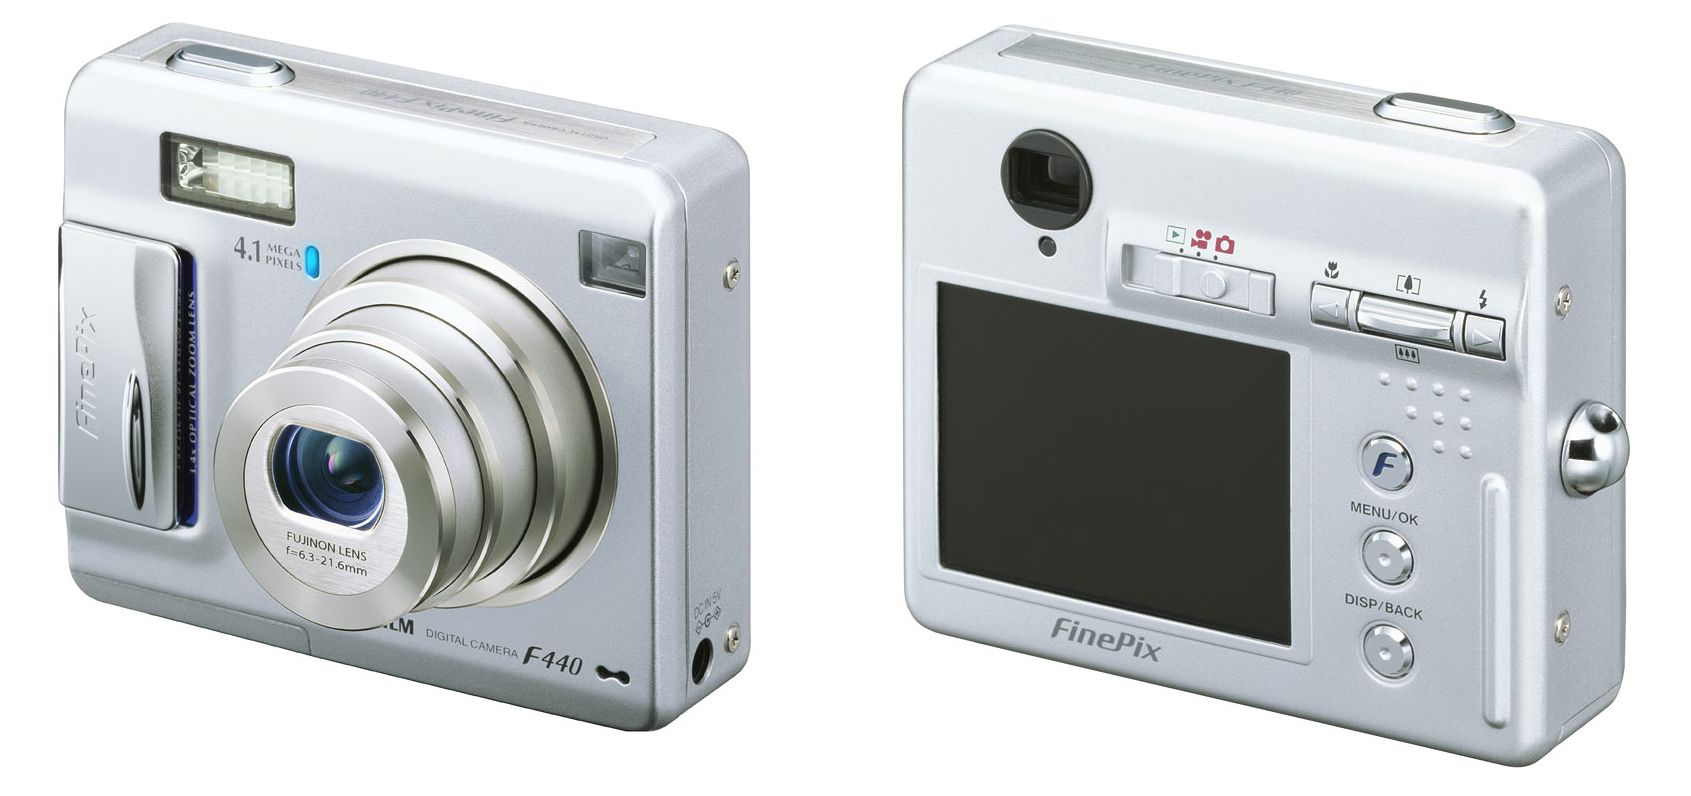 C2230】FUJIFILM Finepix F450 デジタルカメラ デジタルカメラ ホット 